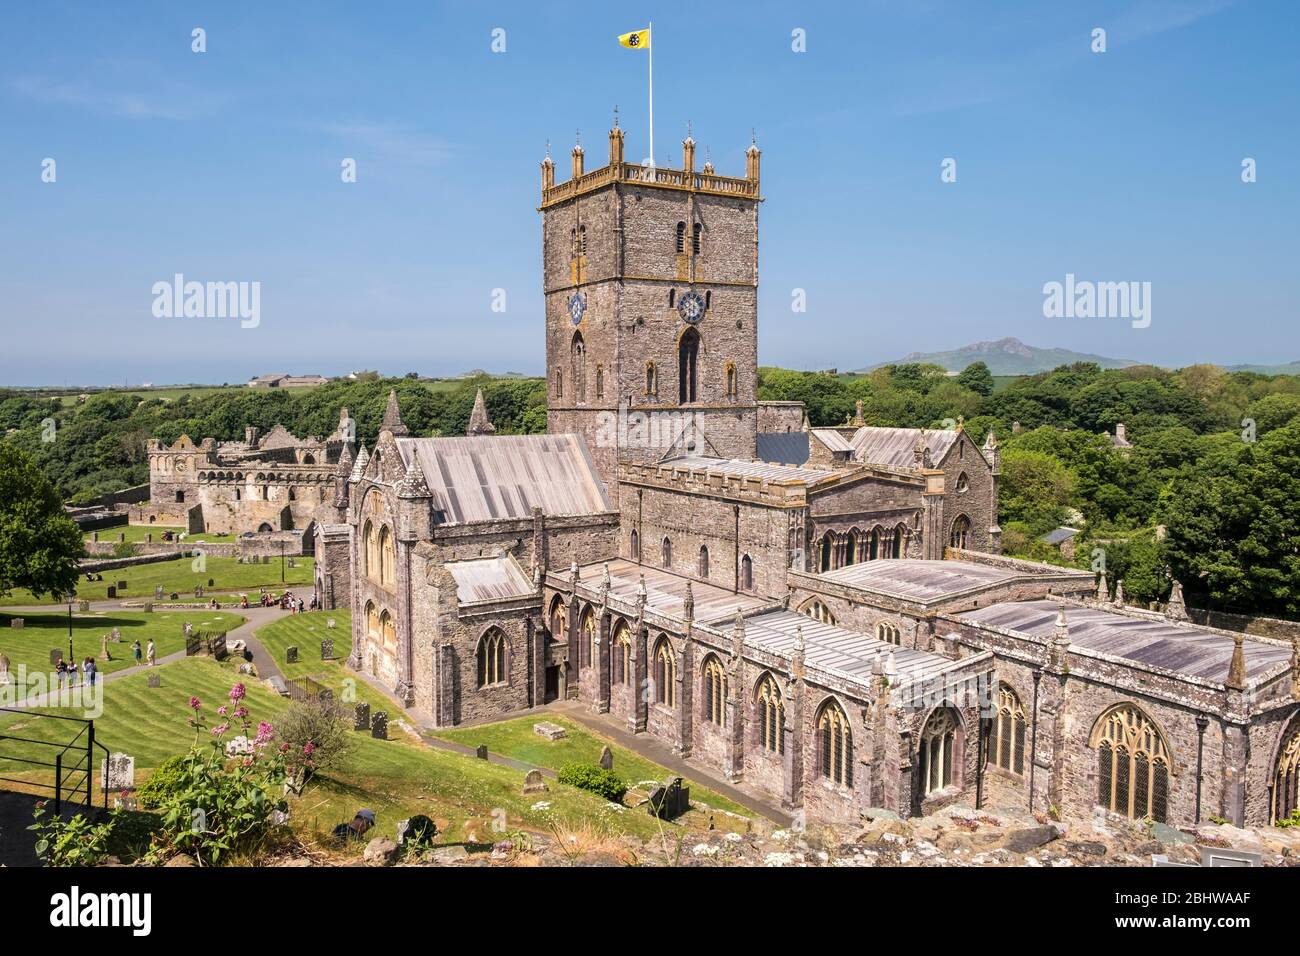 Cathédrale St Davids, St Davids, Pembrokeshire, Pays de Galles, GB, Royaume-Uni Banque D'Images